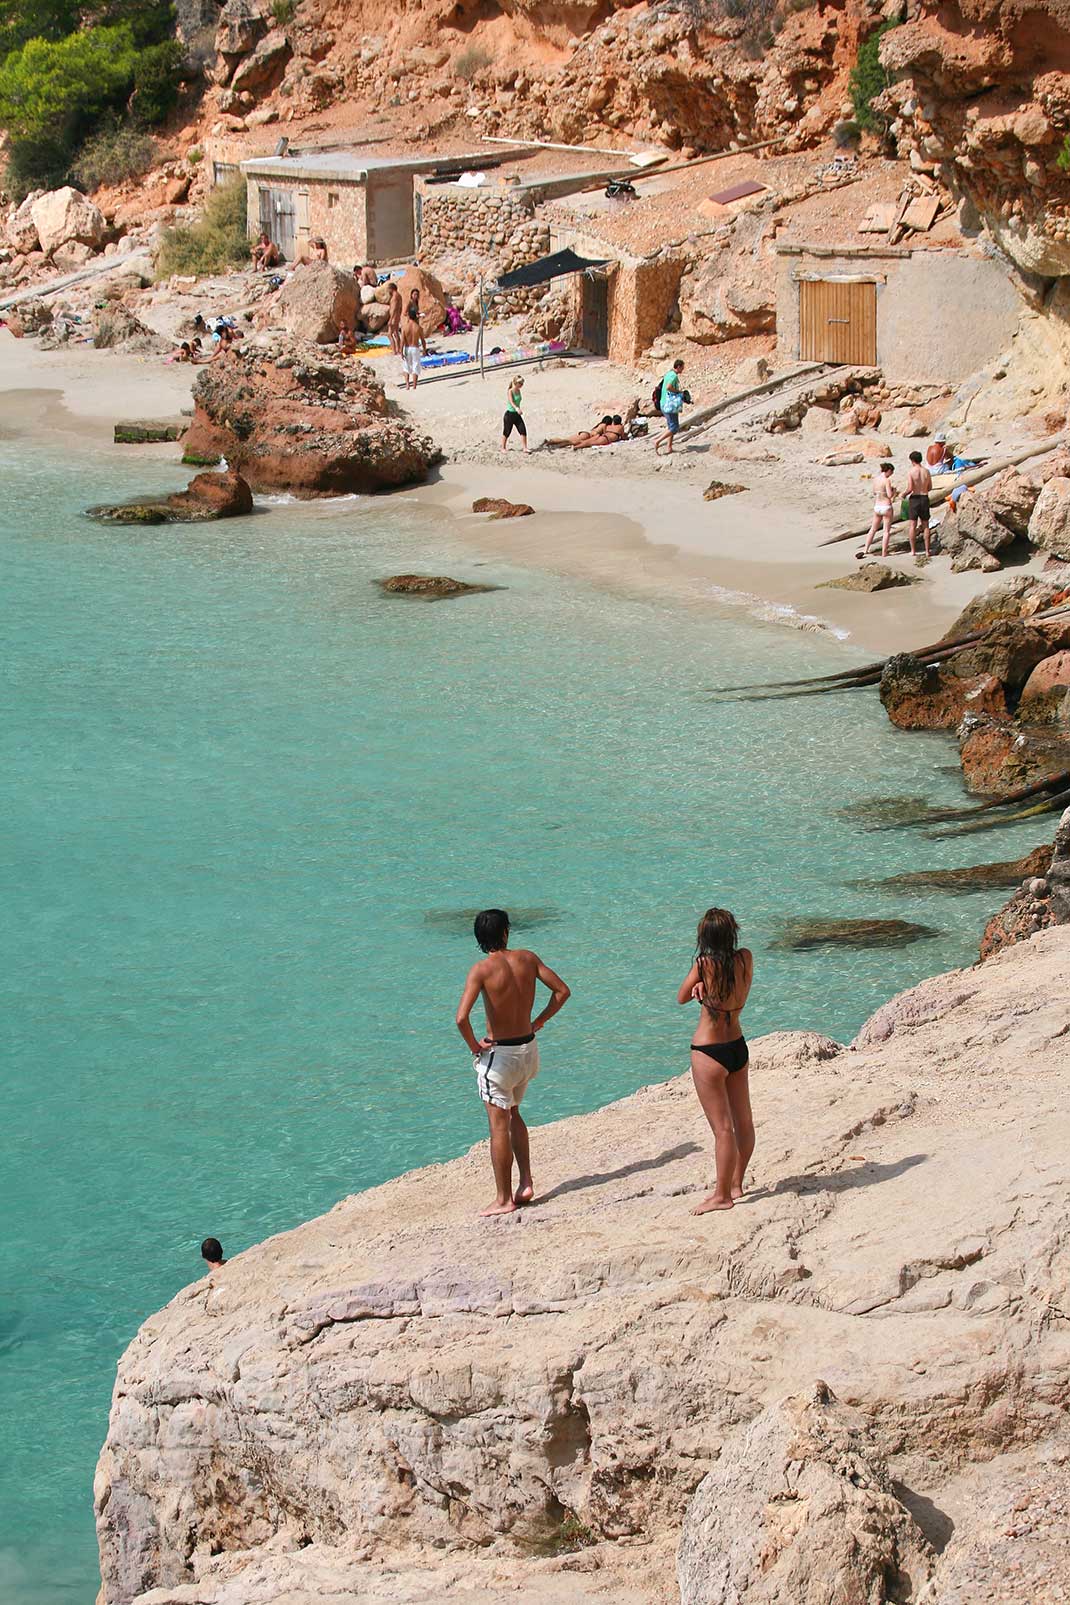 Ibiza fkk Category:Beach nudity